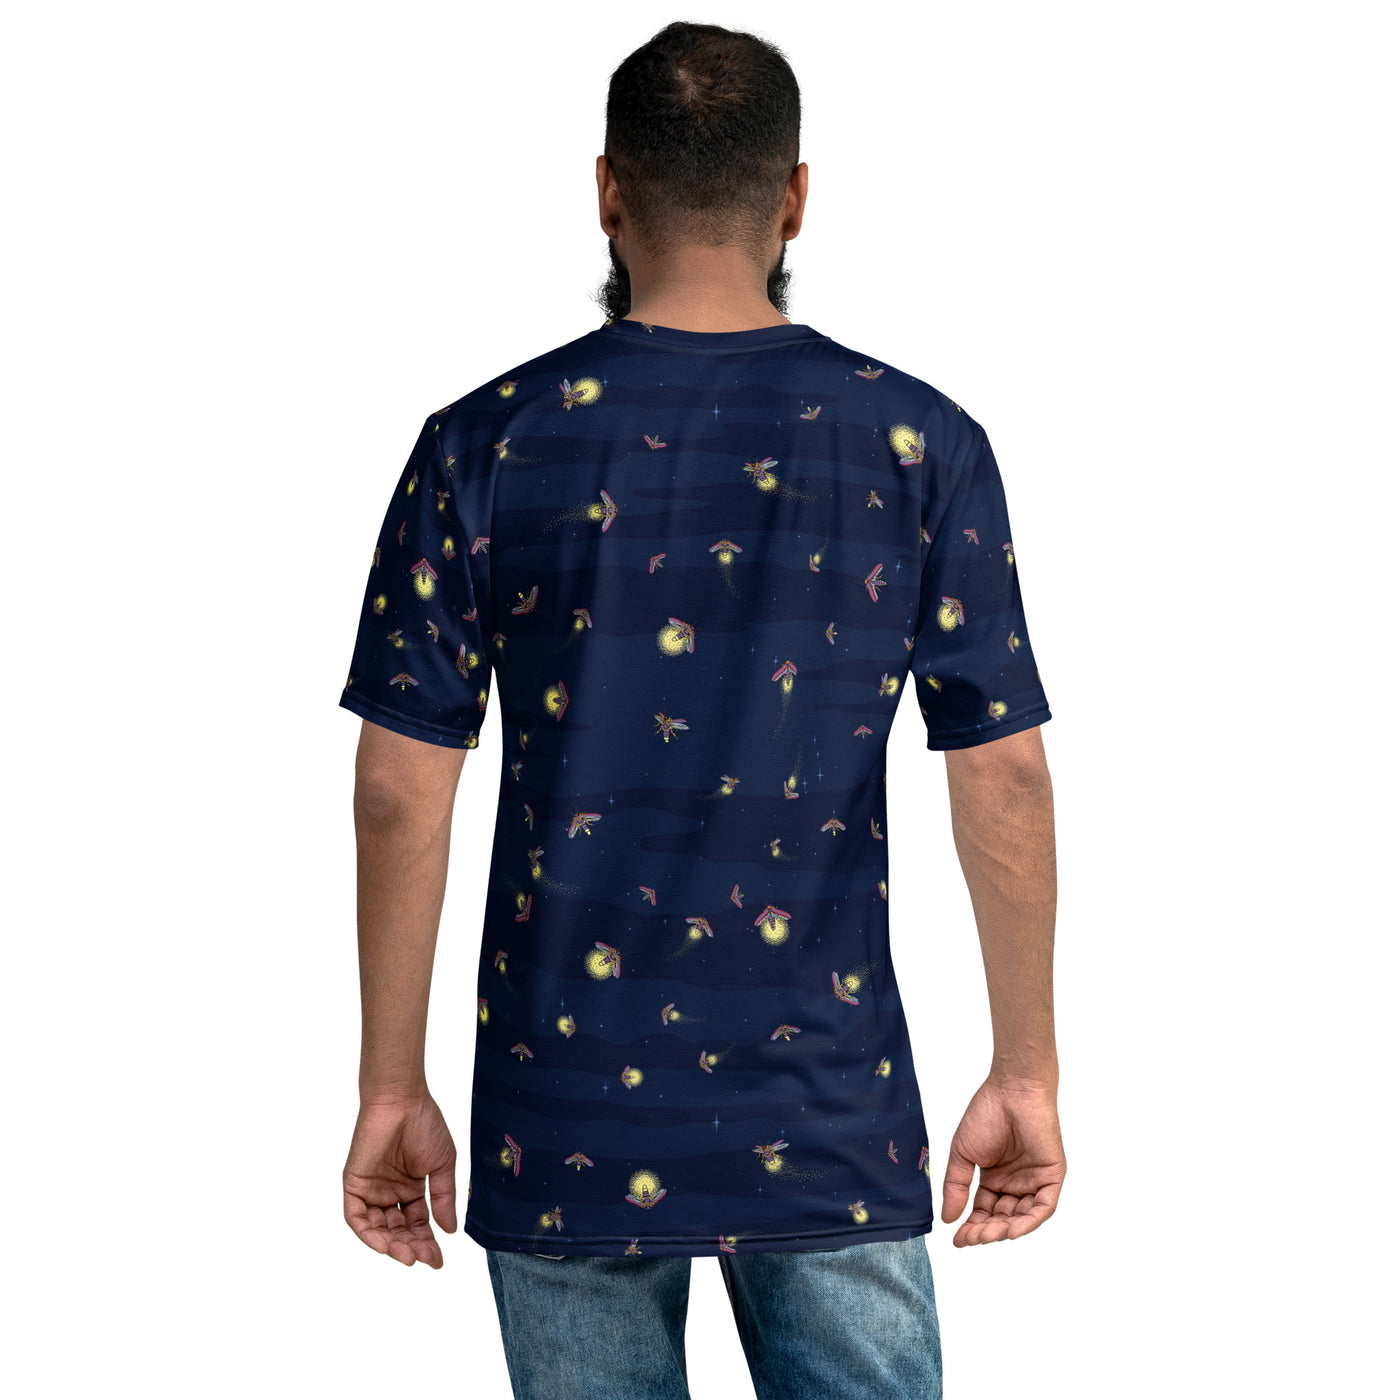 Fireflies- T-shirt